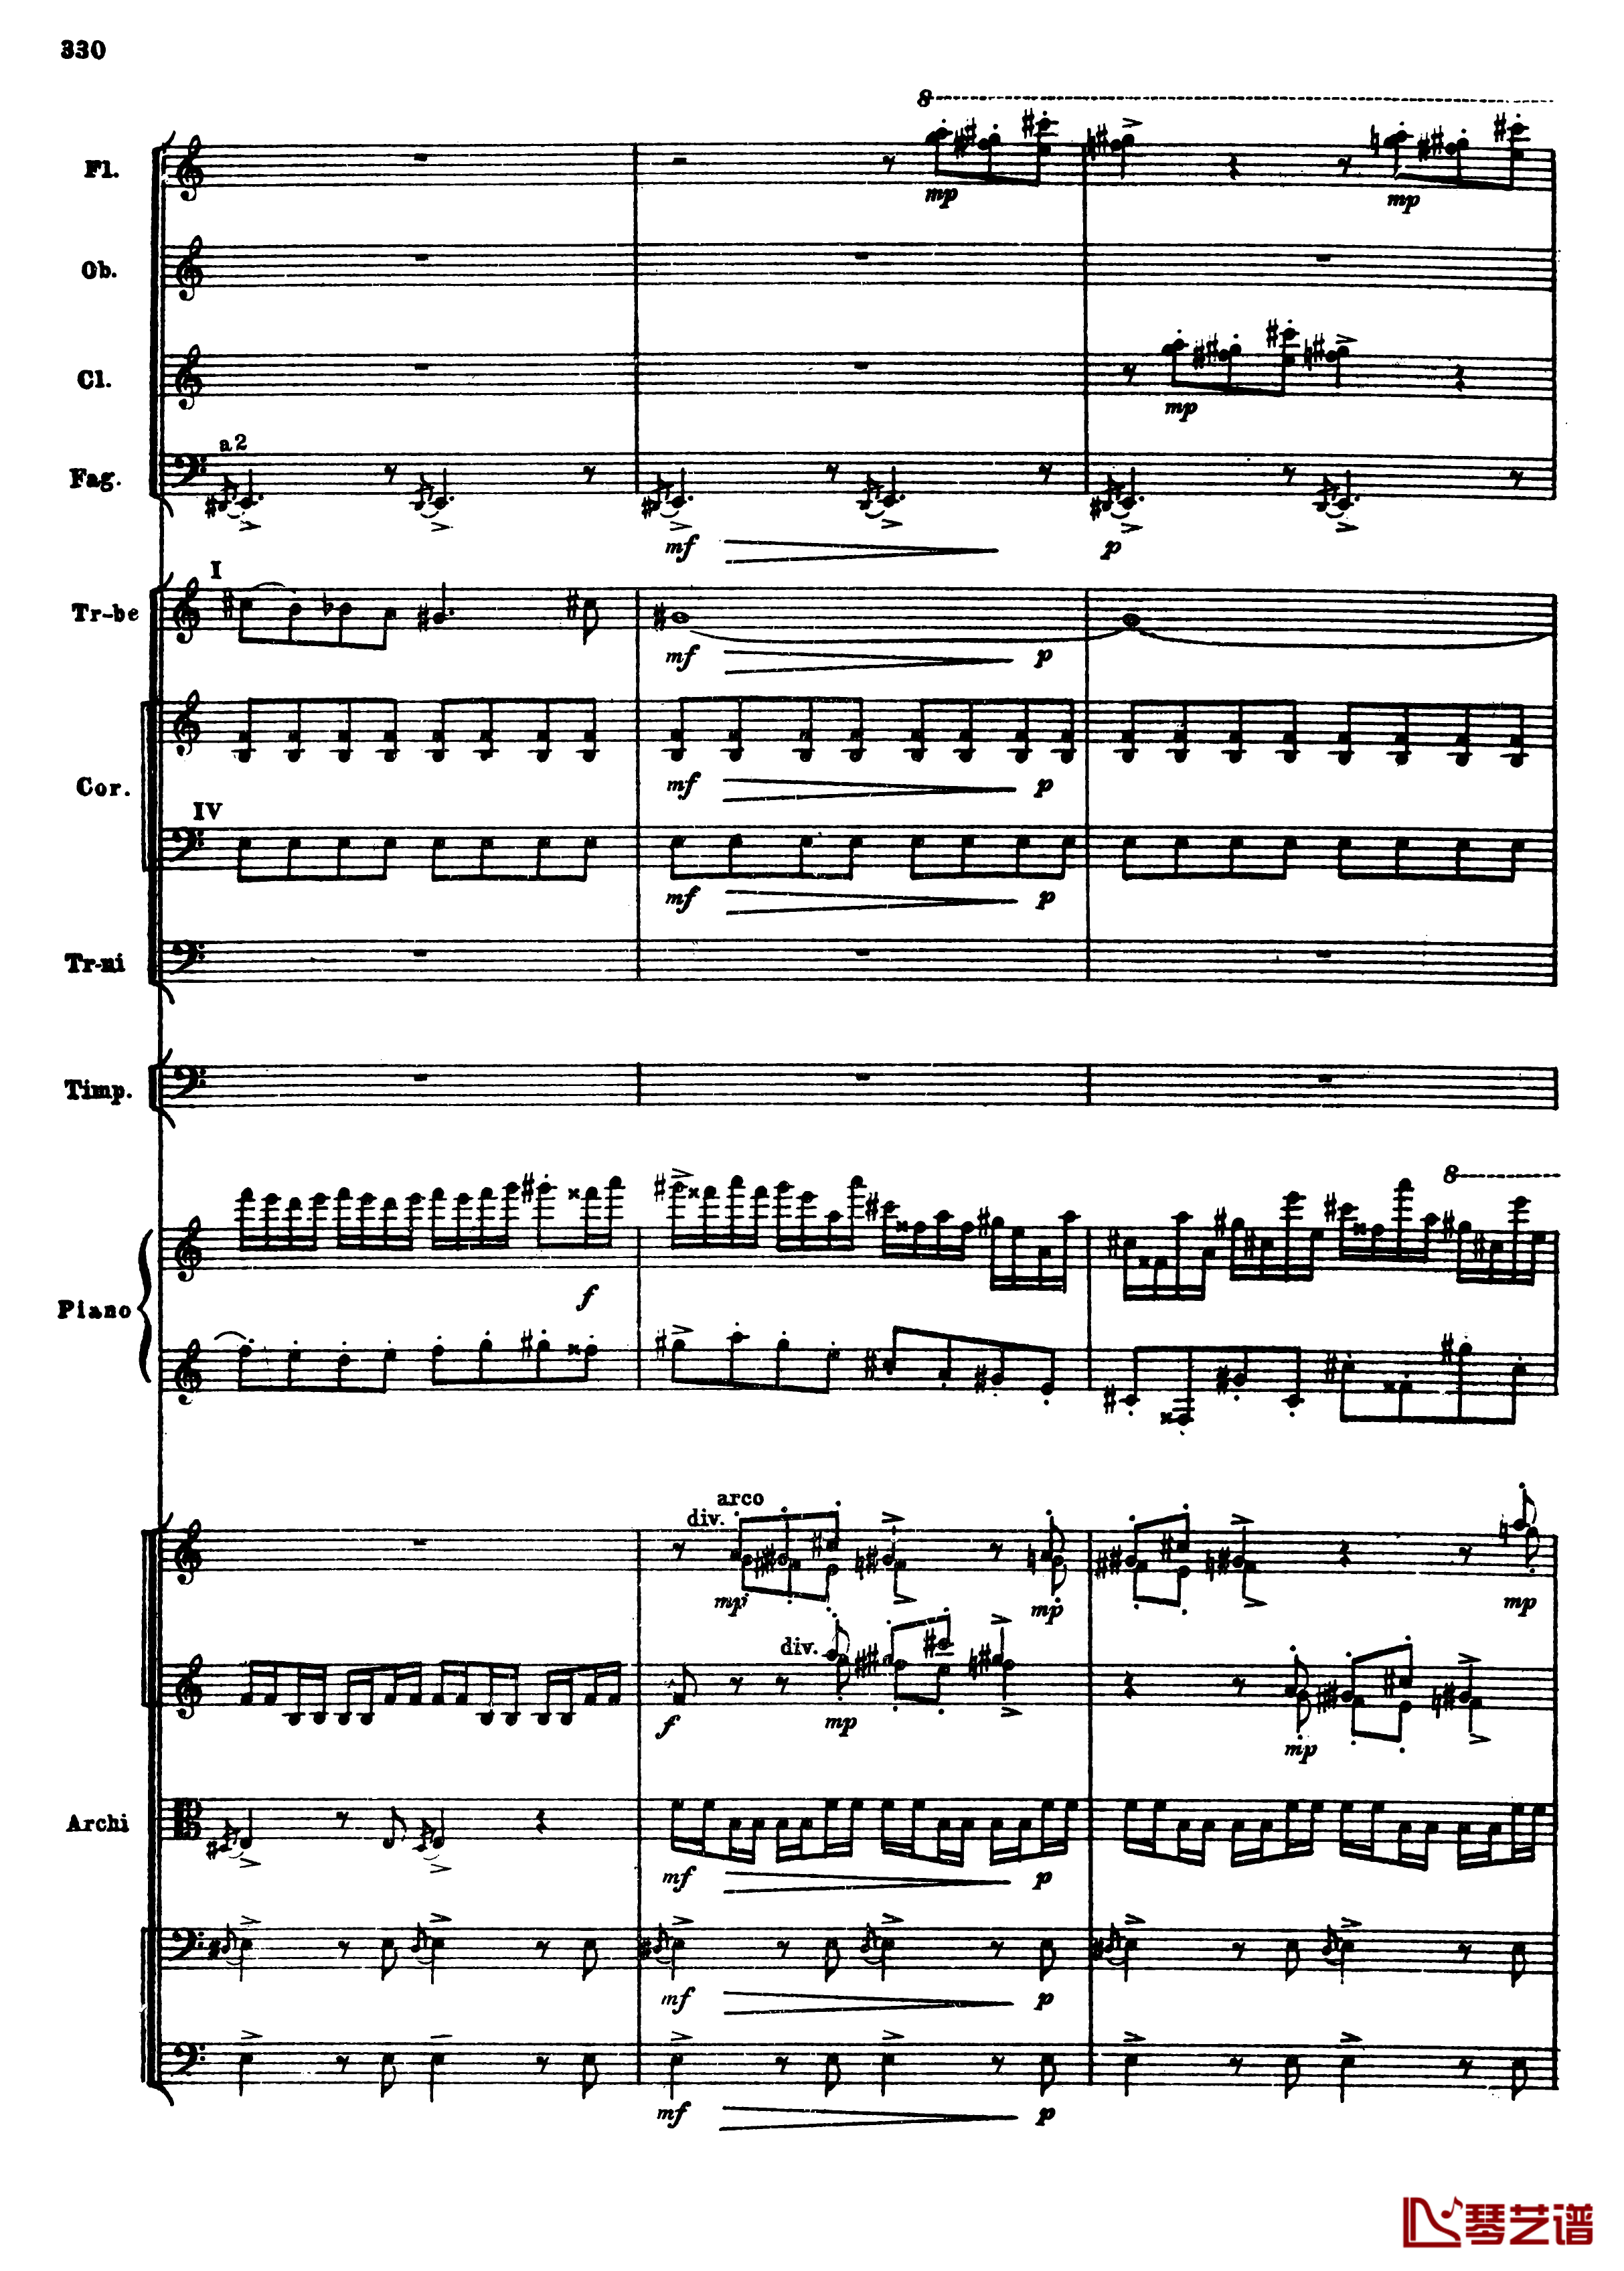 普罗科菲耶夫第三钢琴协奏曲钢琴谱-总谱-普罗科非耶夫62